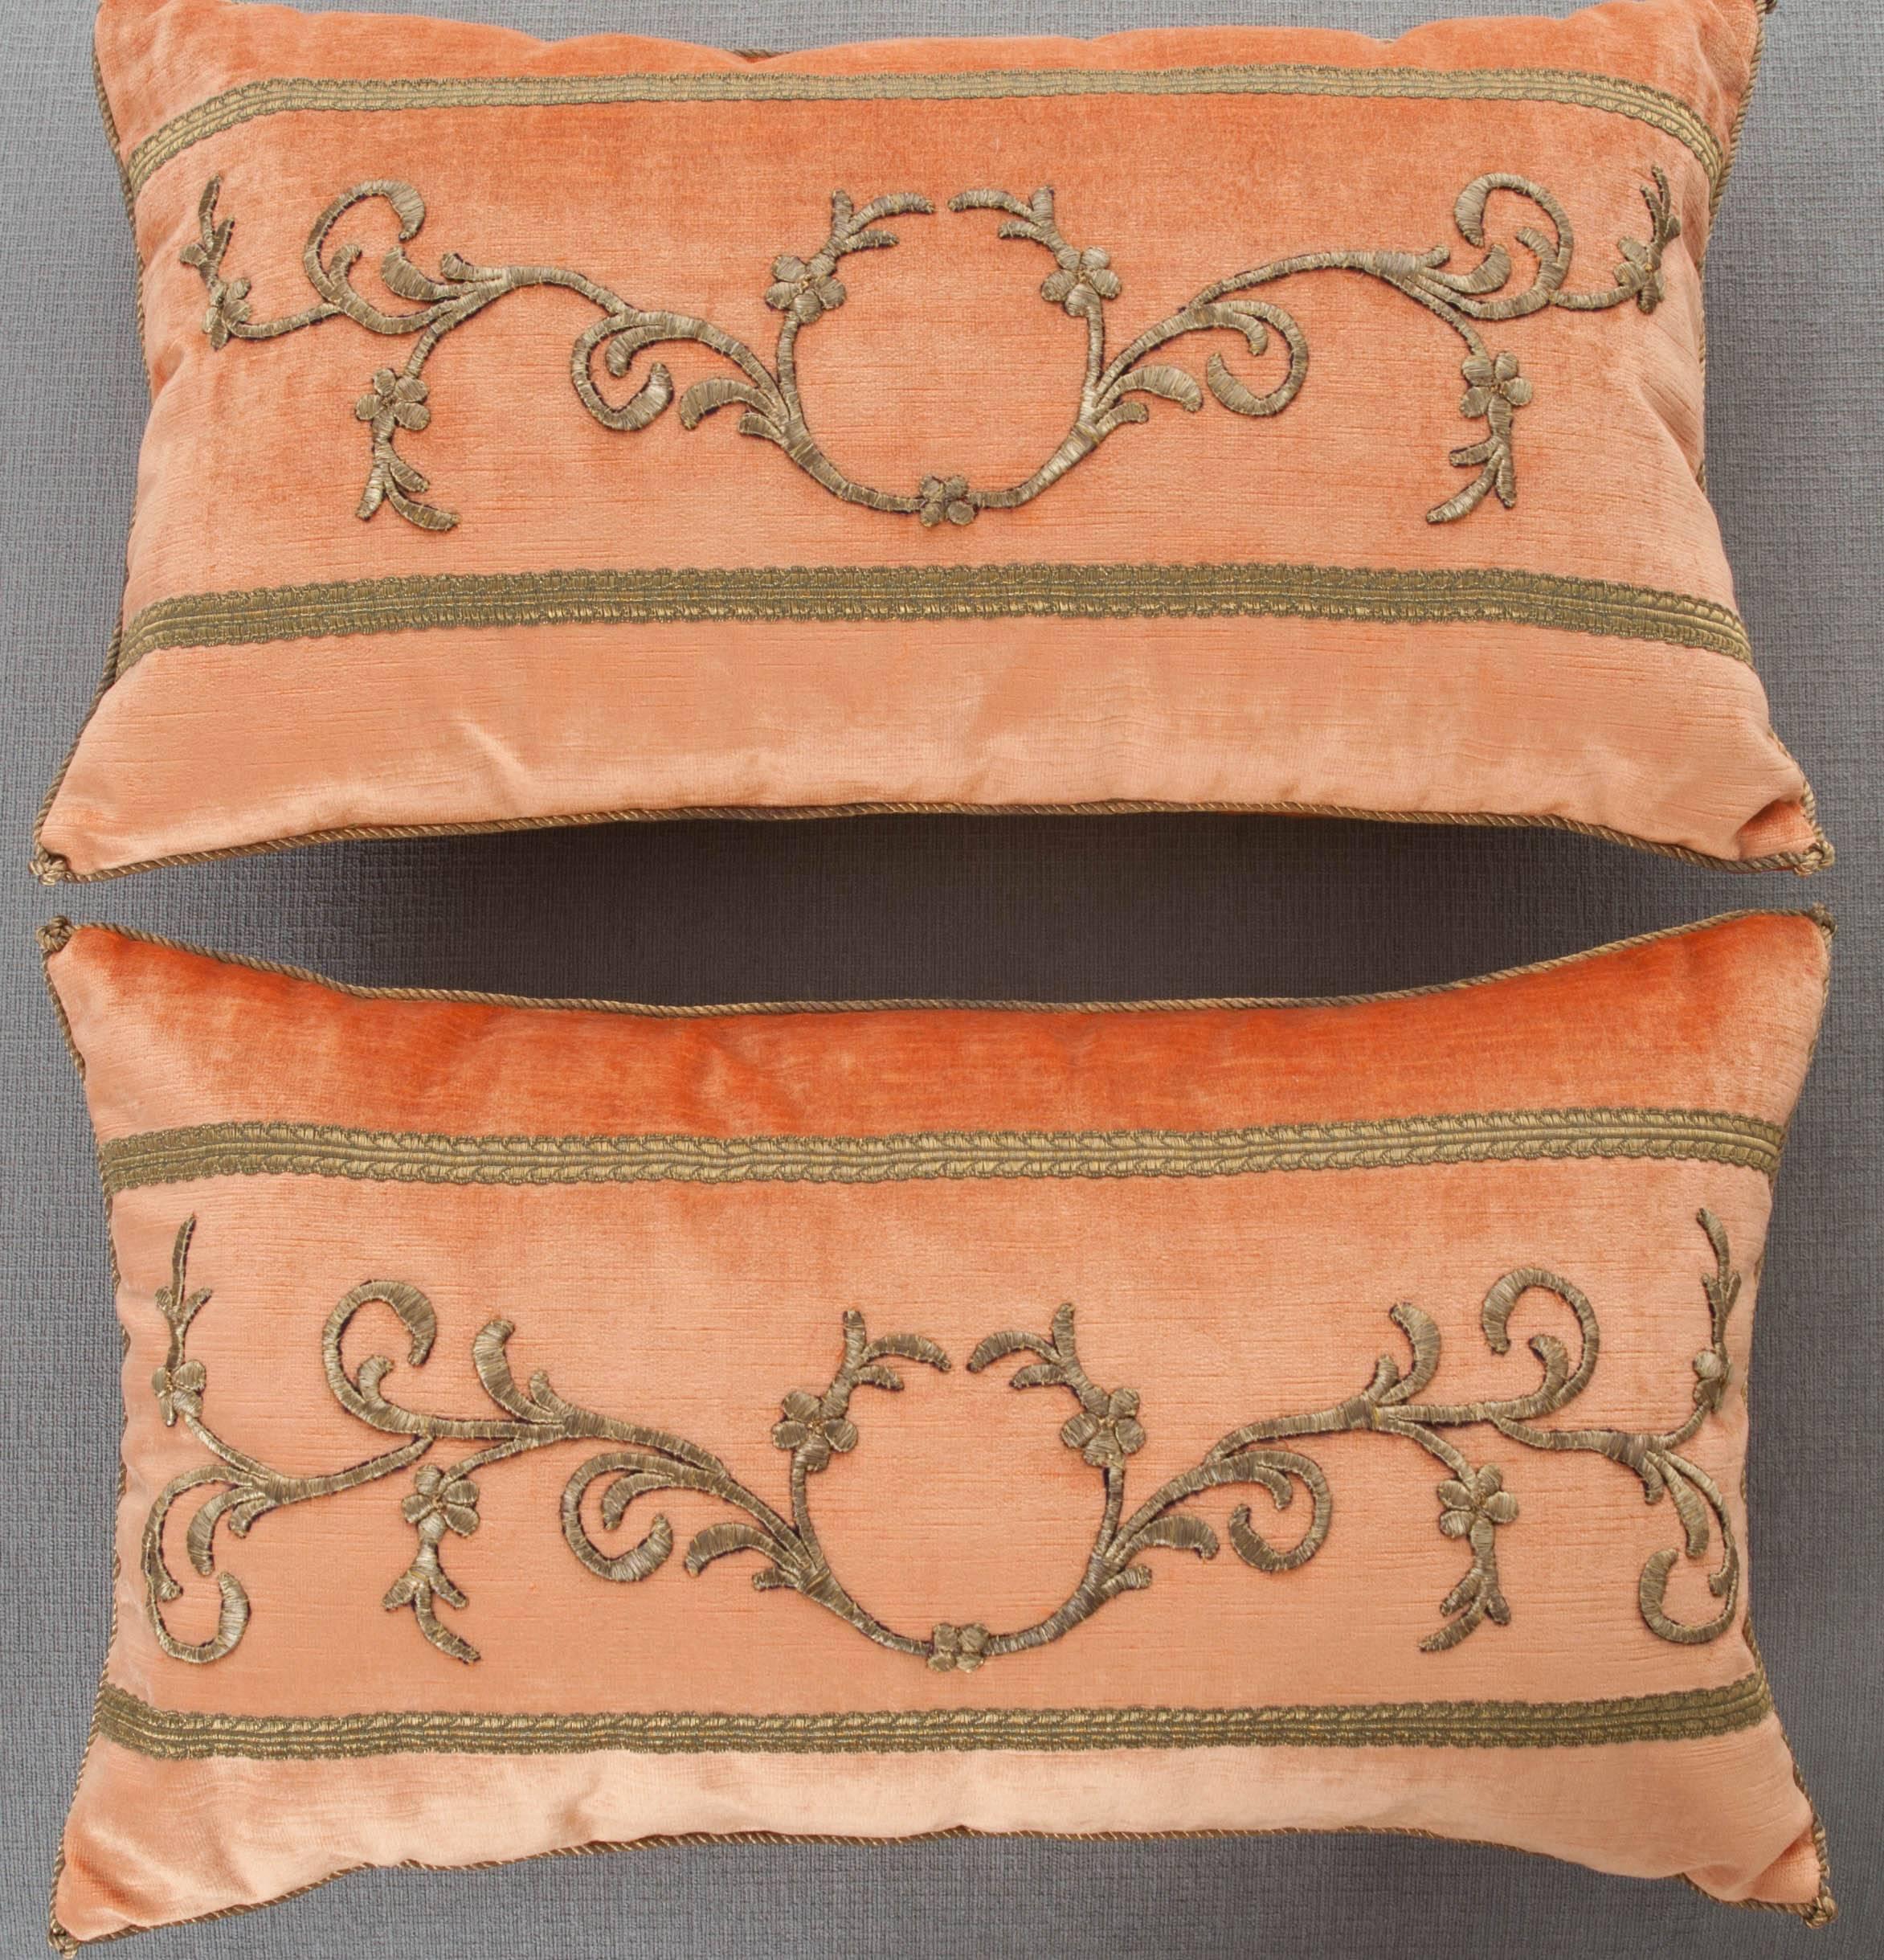 Antique Textile Pillows by B.Viz Designs 4